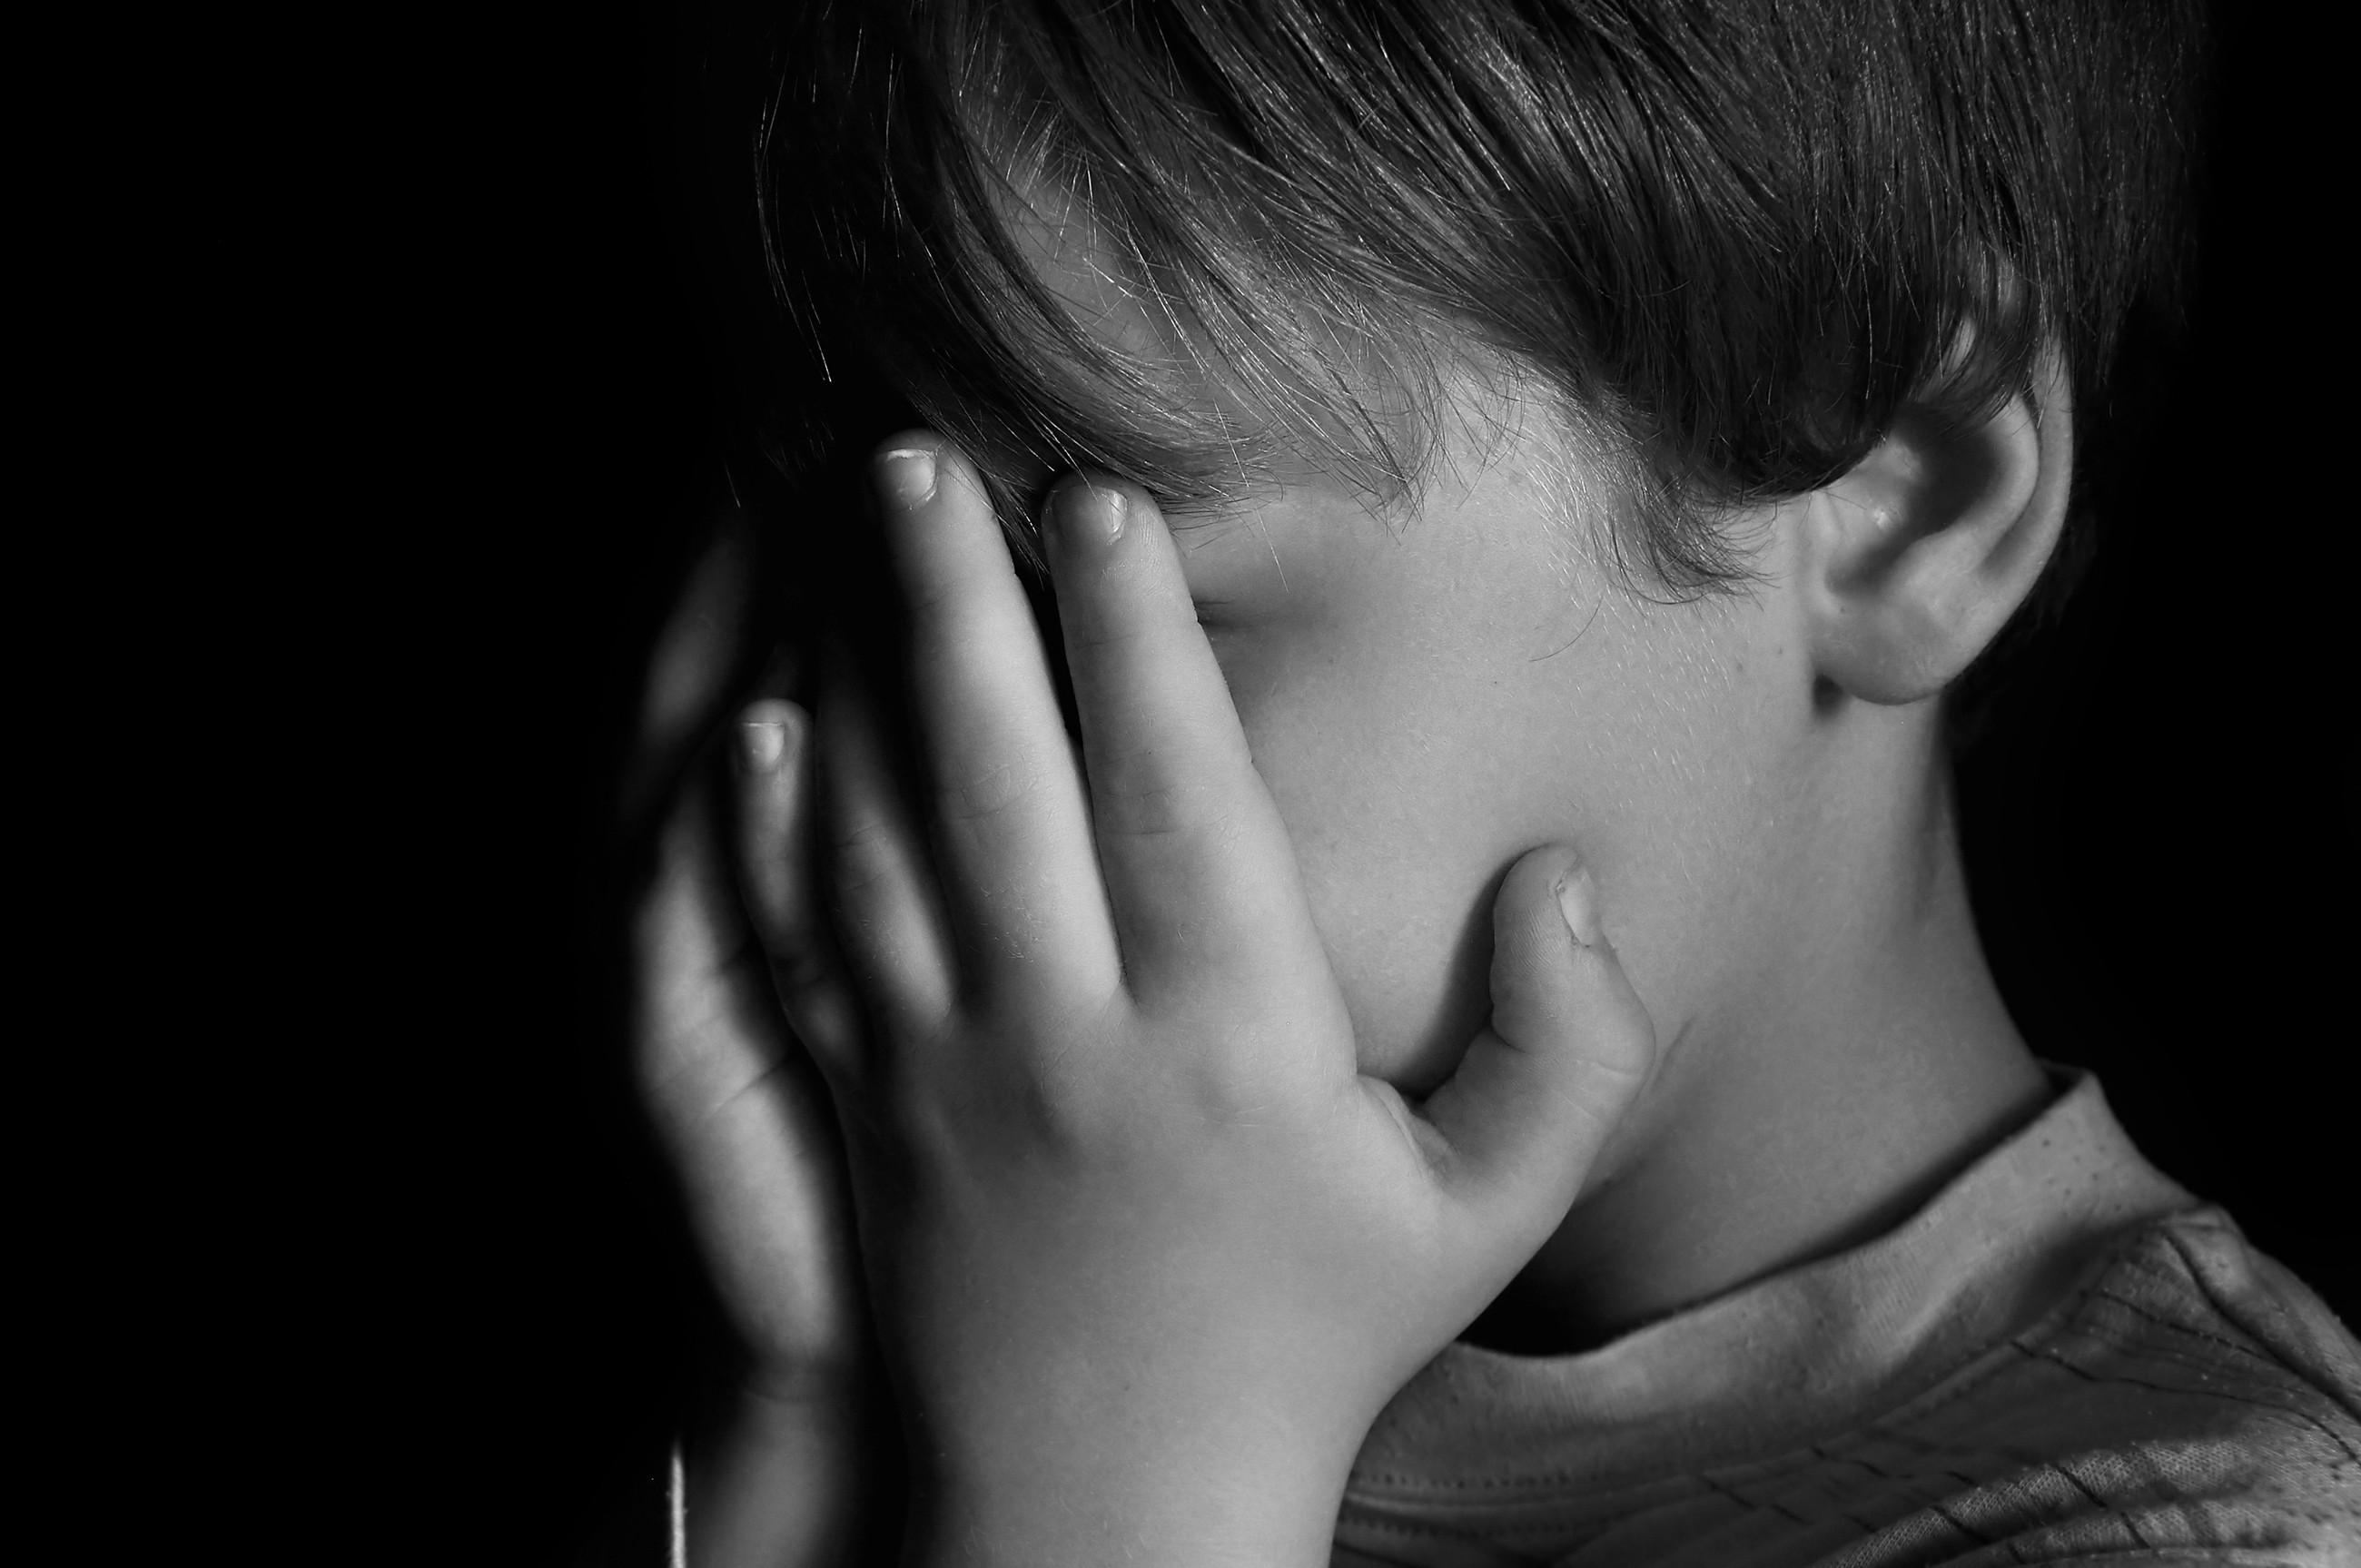 Tristeza, dor. angústia: como ensinar as crianças a lidarem com essas emoções? (Foto: Thinkstock)